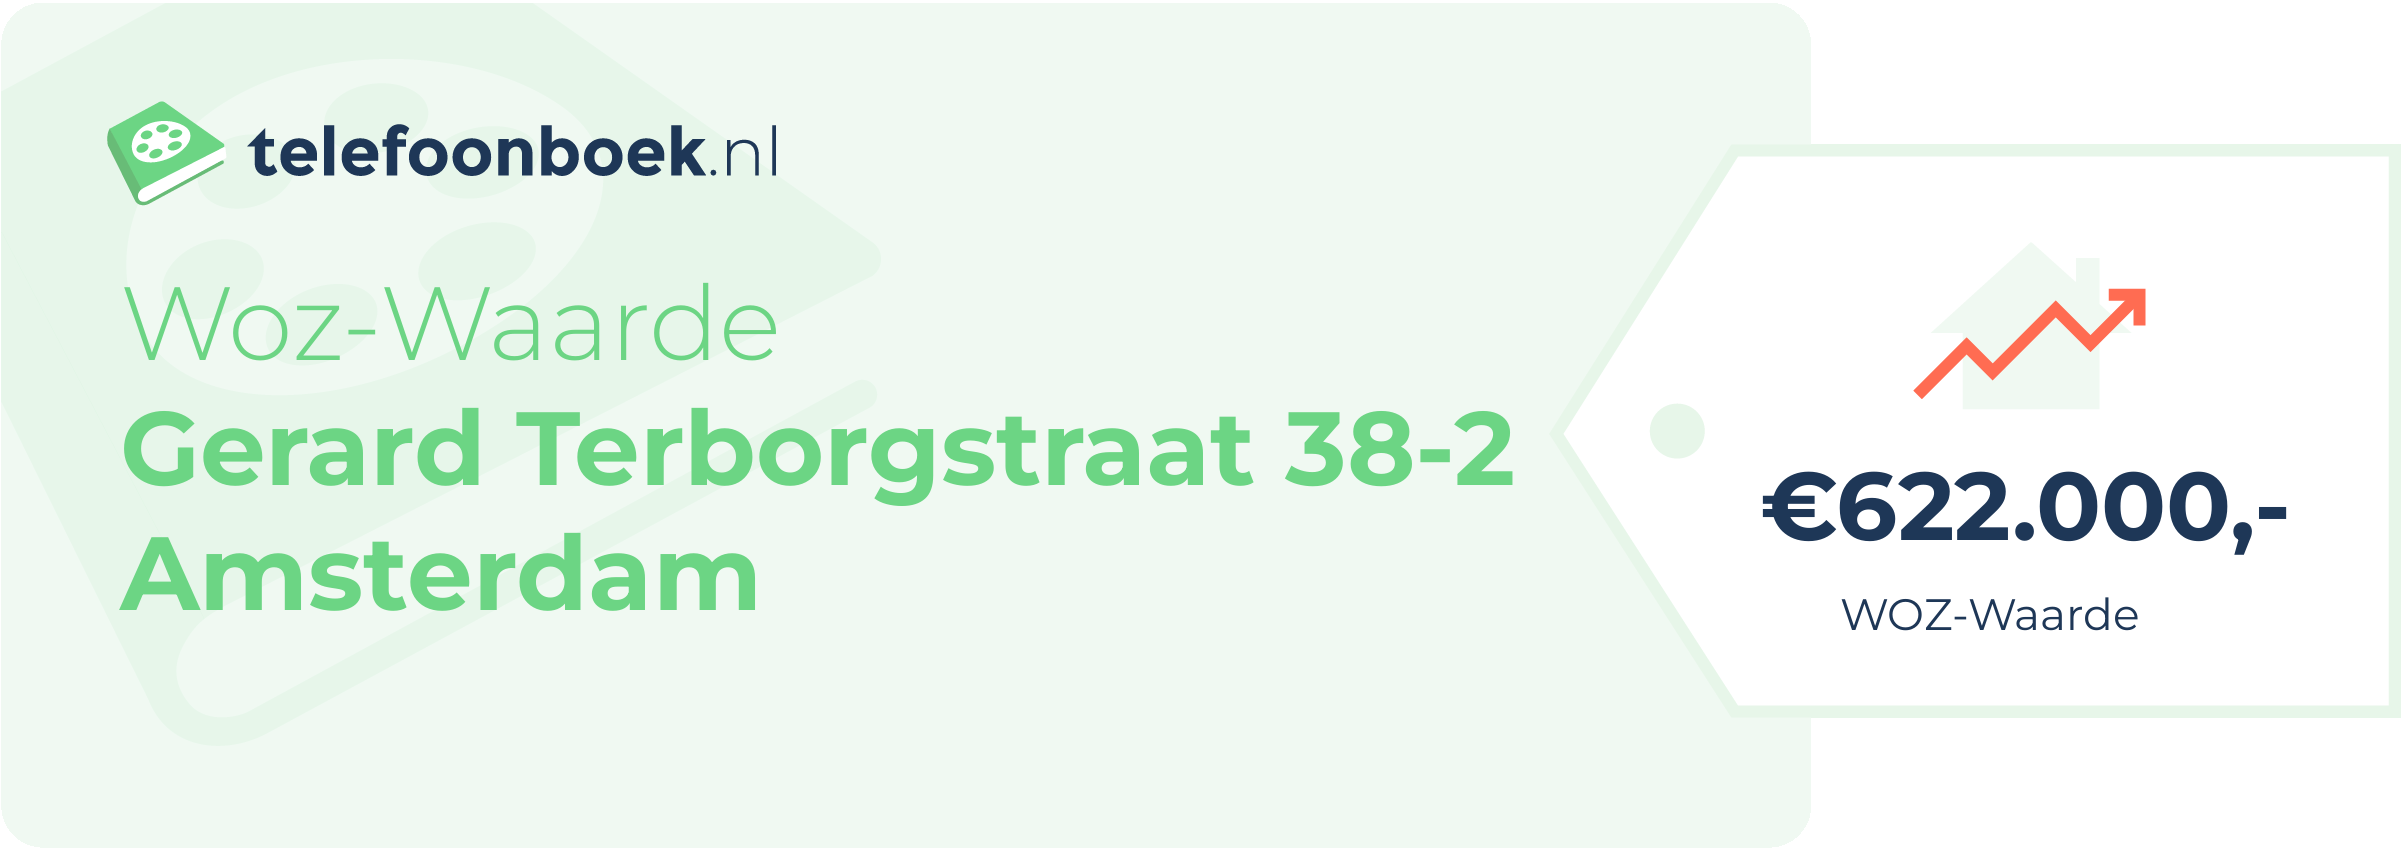 WOZ-waarde Gerard Terborgstraat 38-2 Amsterdam